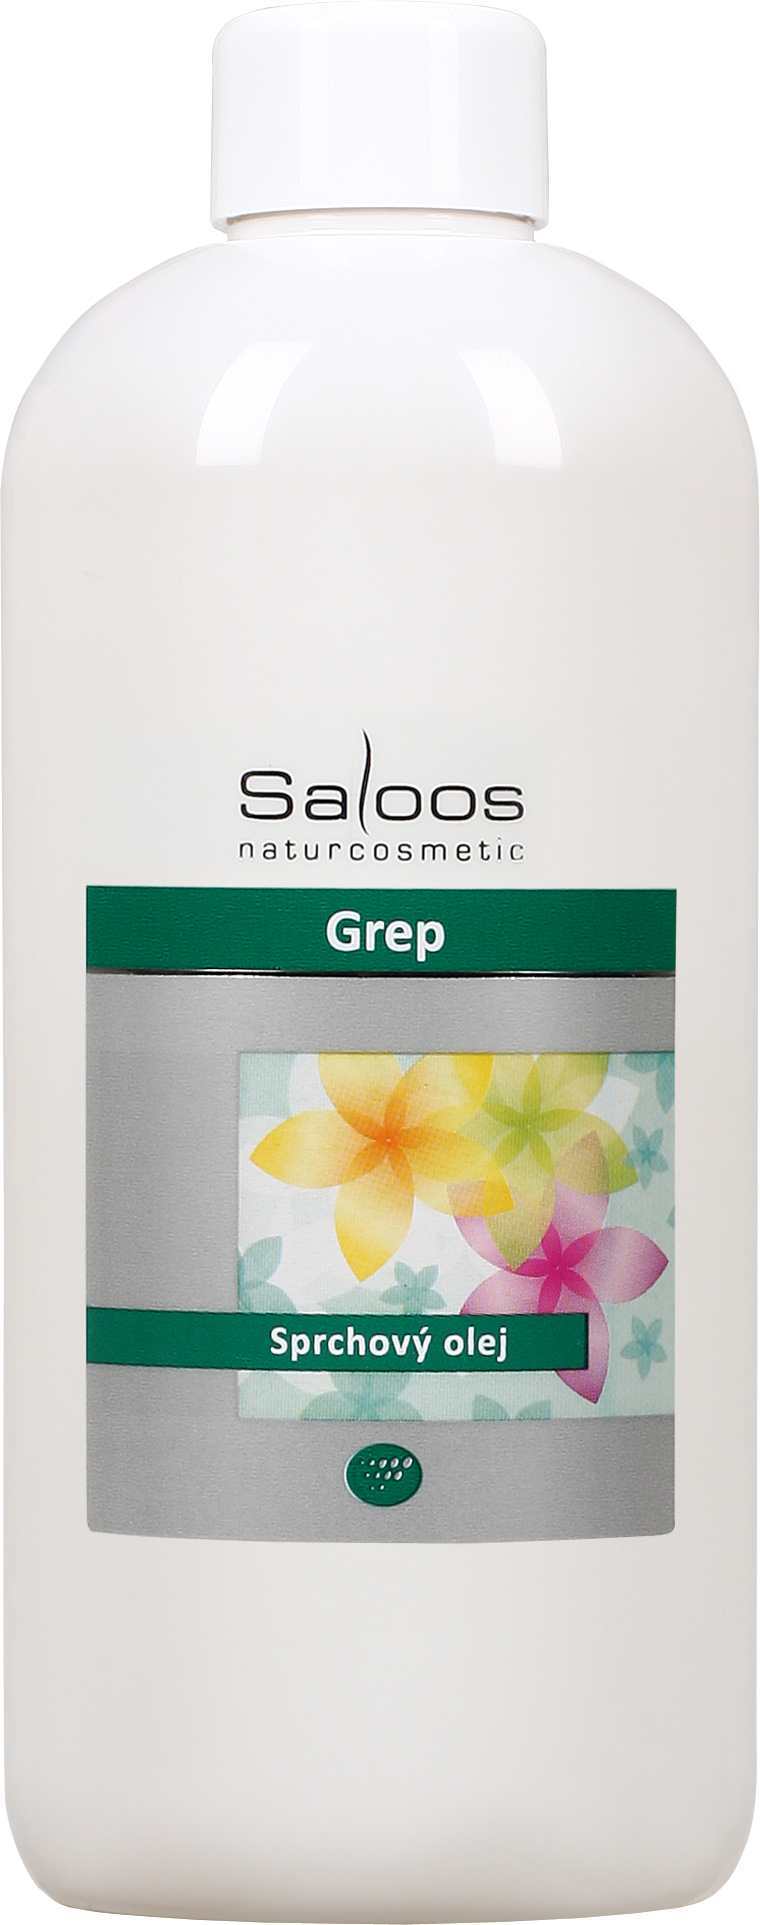 Saloos Grep - sprchový olej Balení: 500 ml